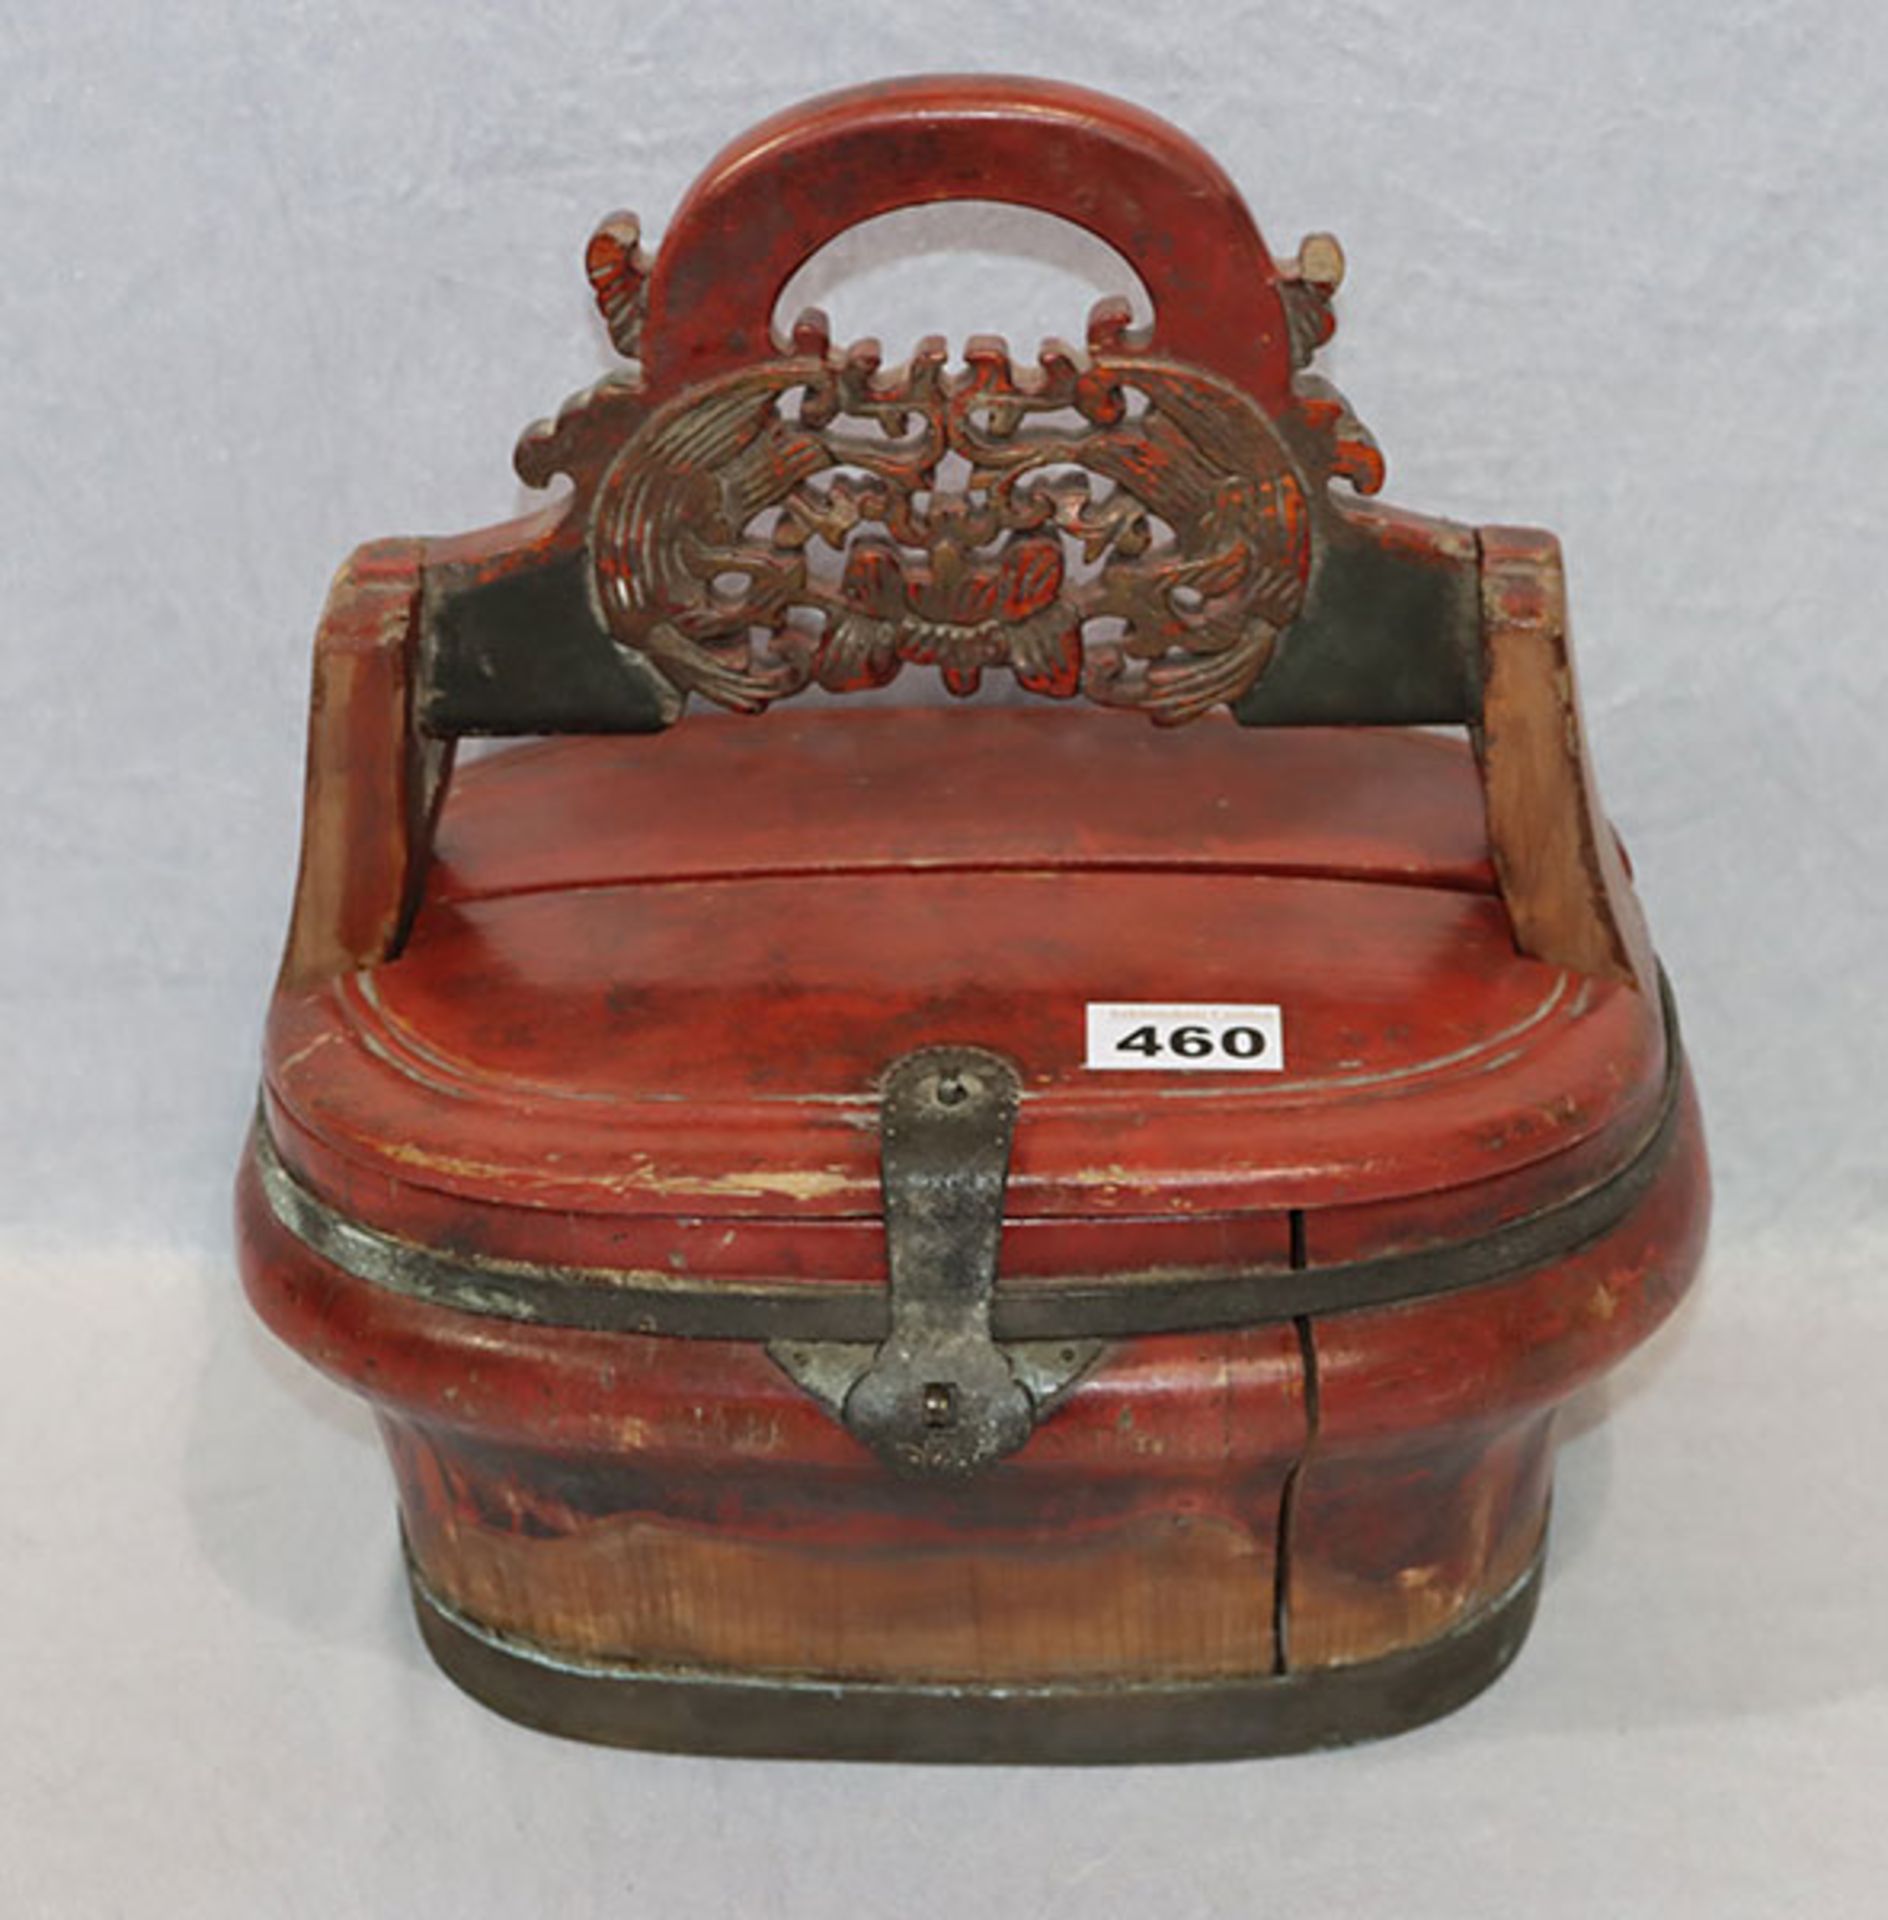 Asiatischer Holzkasten mit verziertem Griff, rot/gold bemalt, Metallband und Schließe, Ende 19.